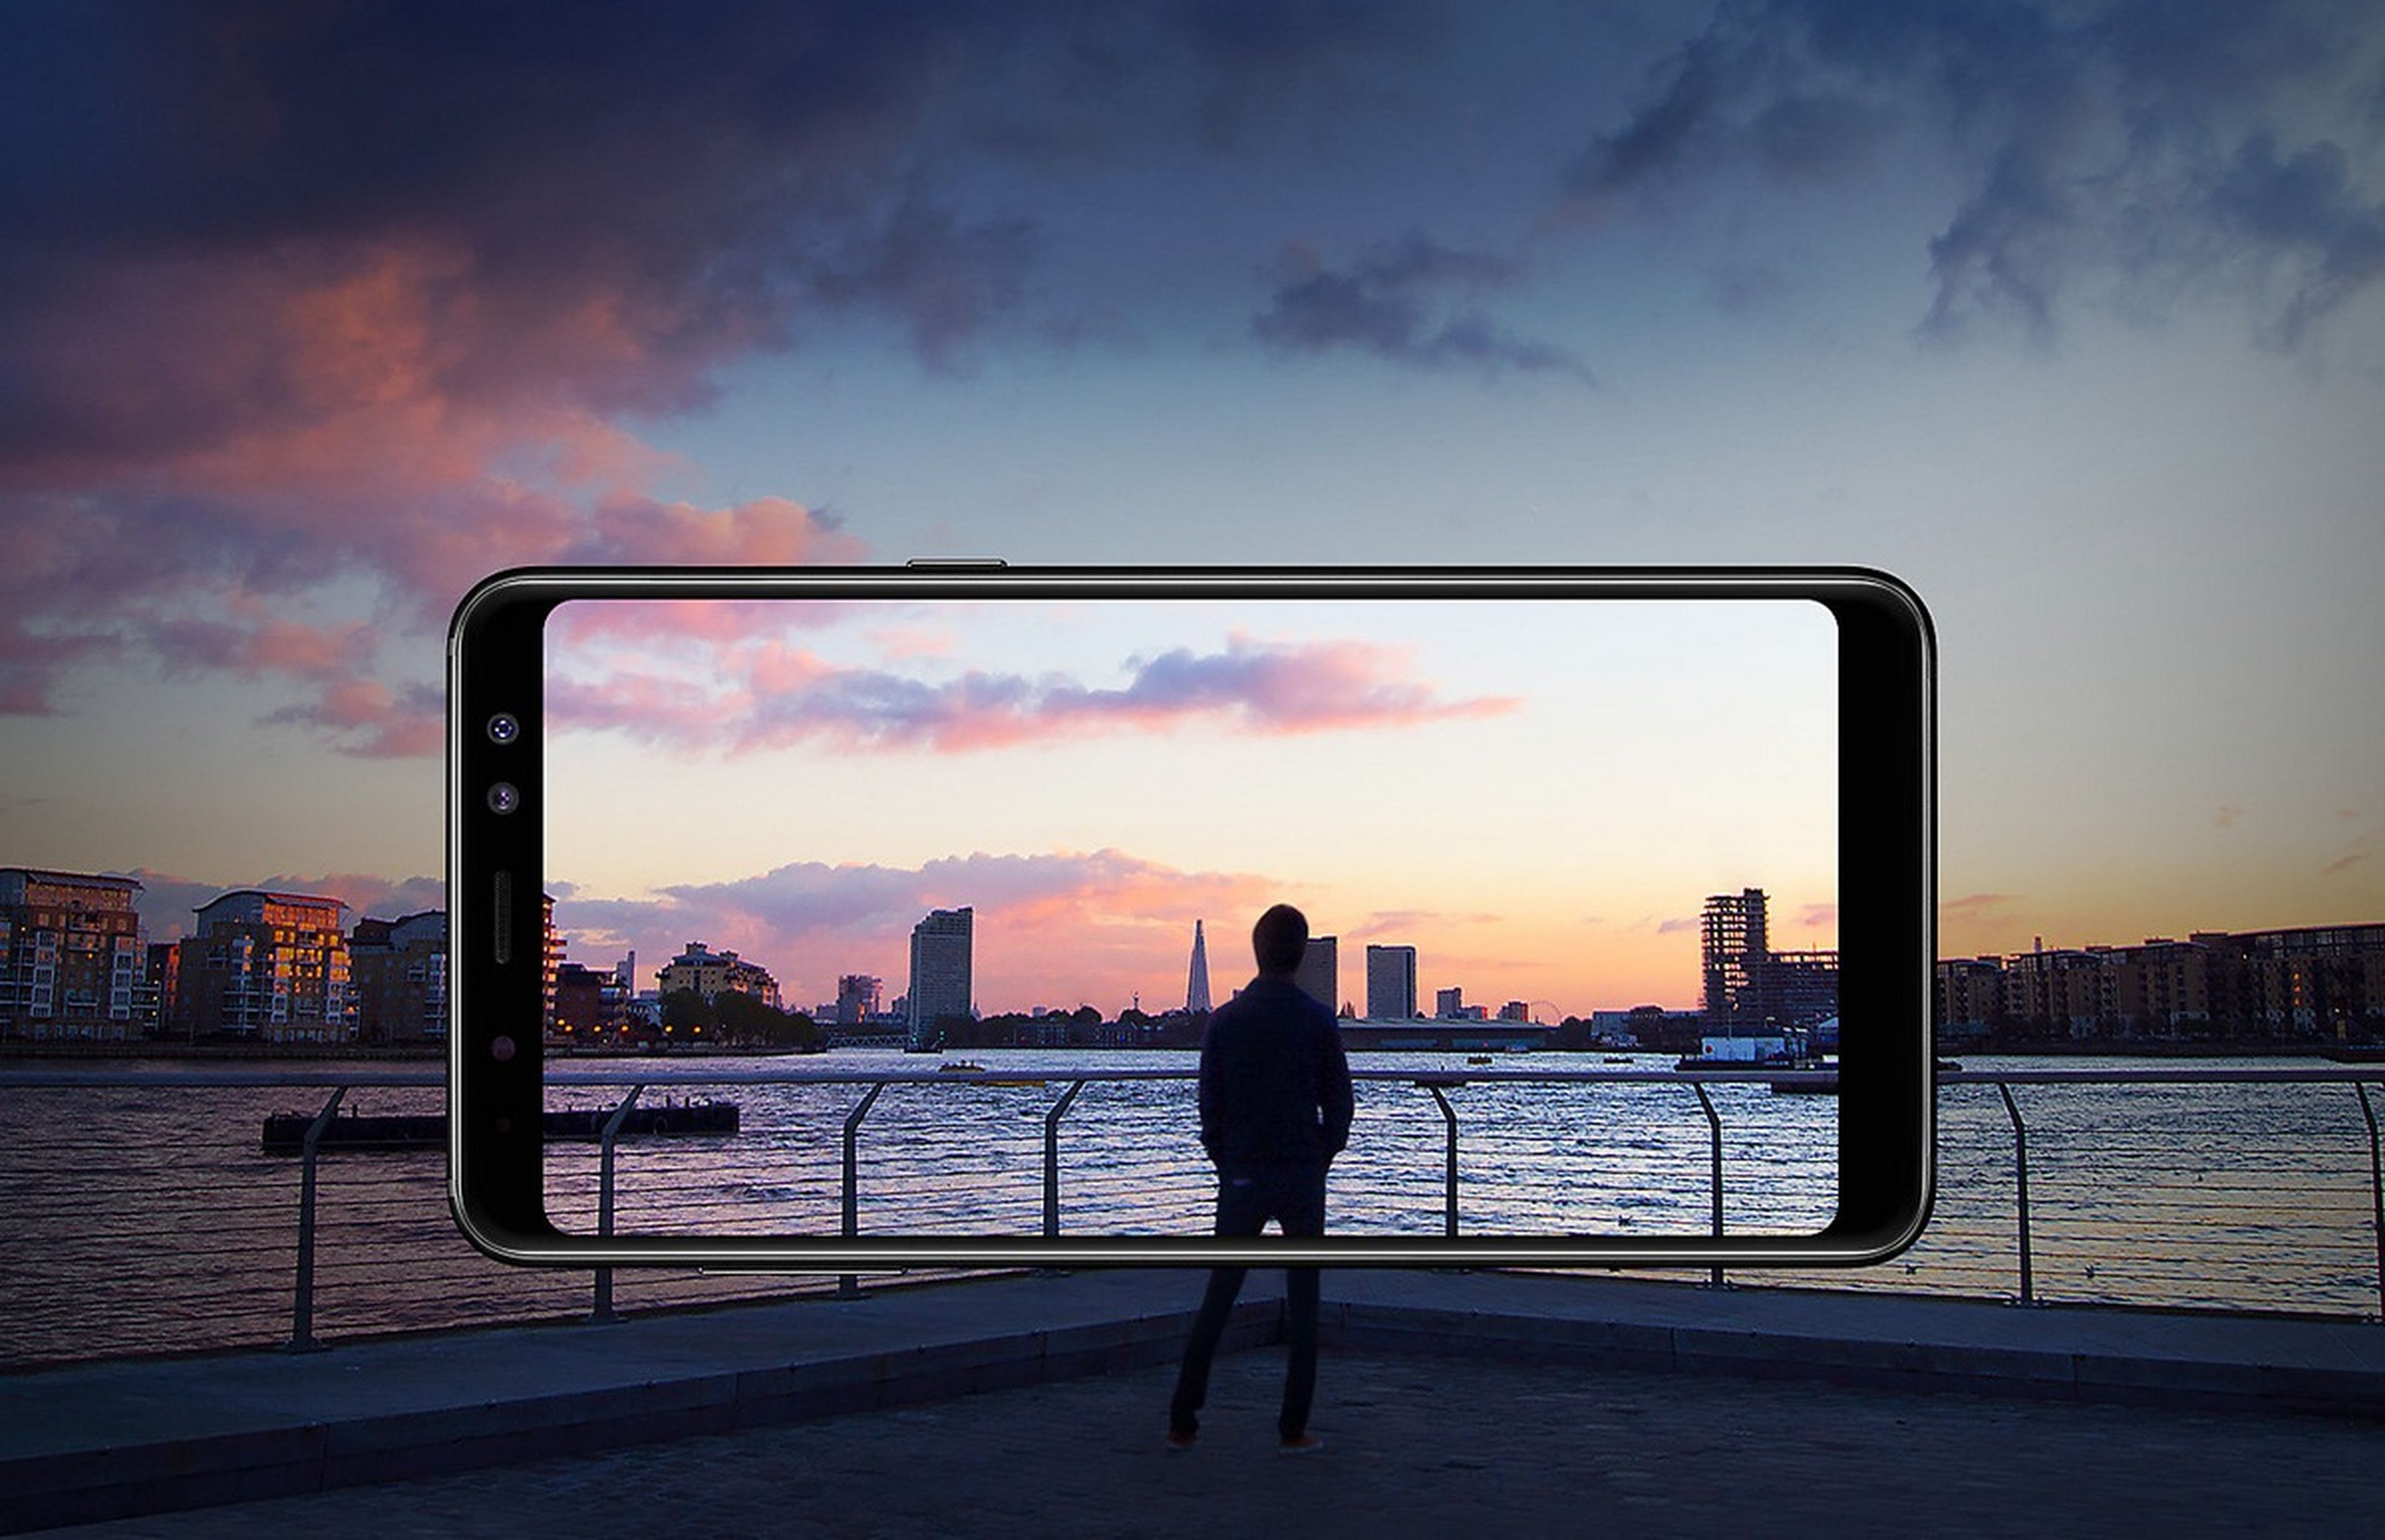 Con el Galaxy A8 (2018), Samsung confirma su apuesta por el público joven